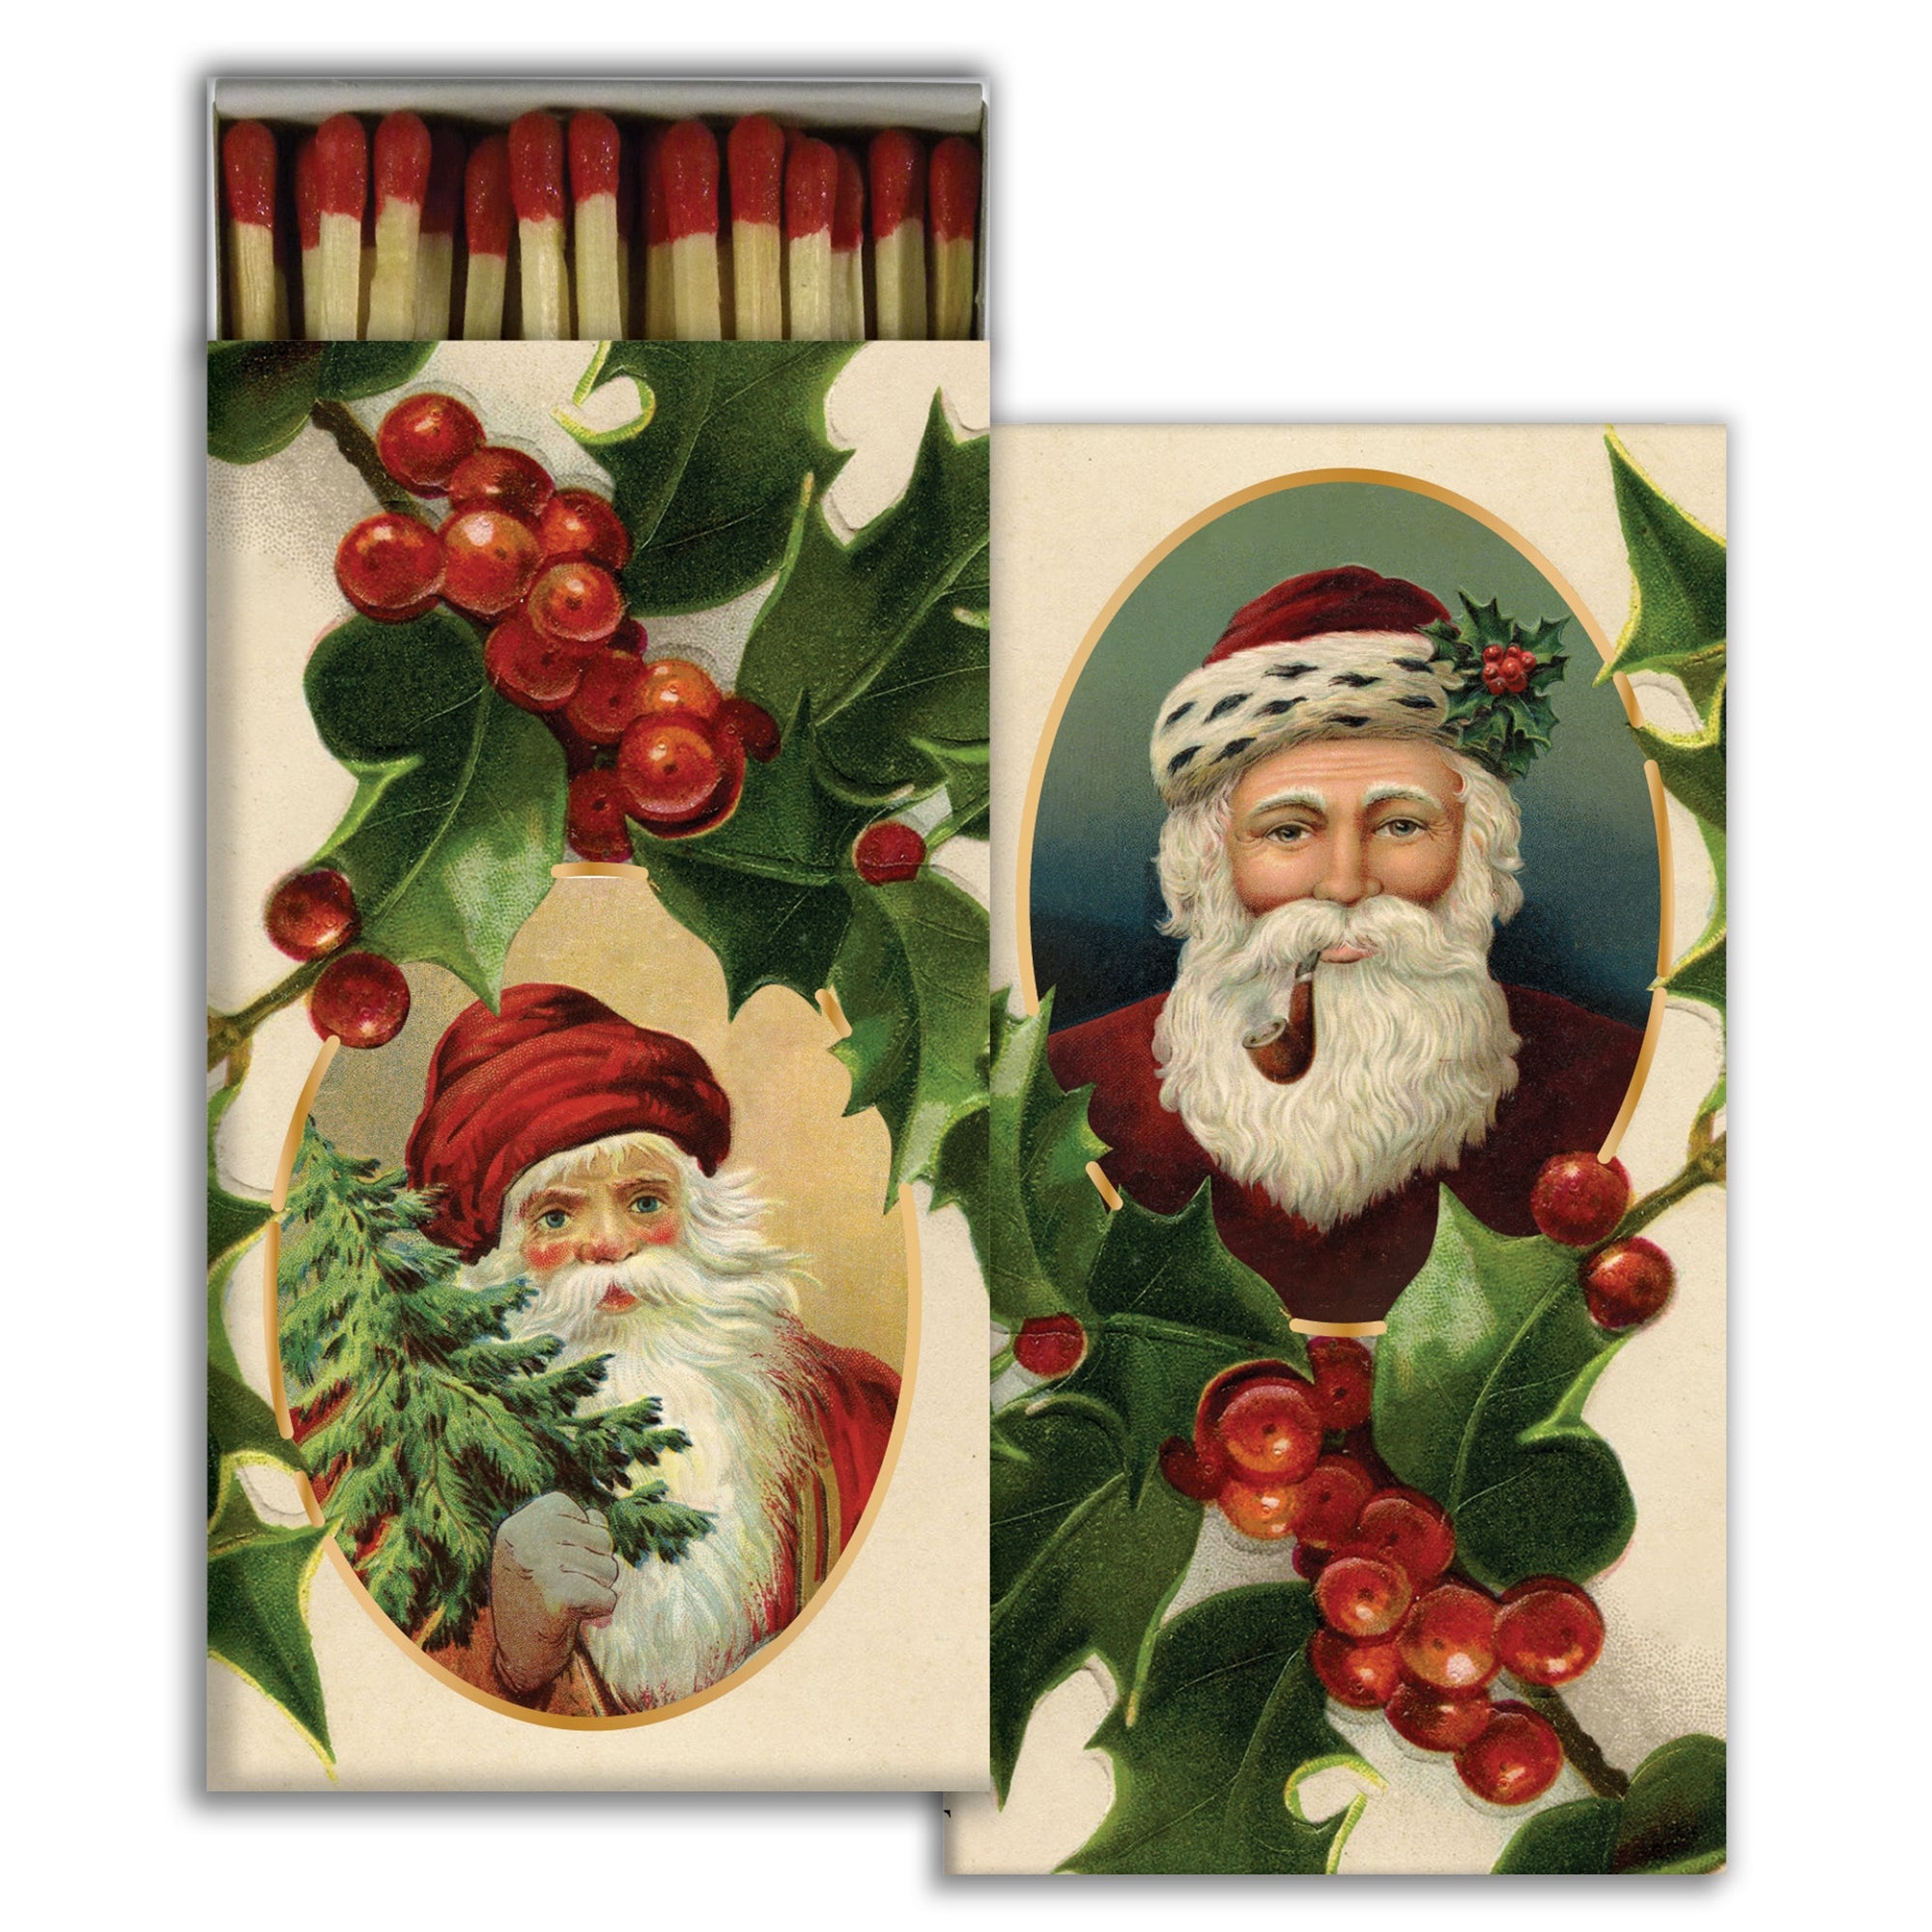 Matches - Santa's and Holly